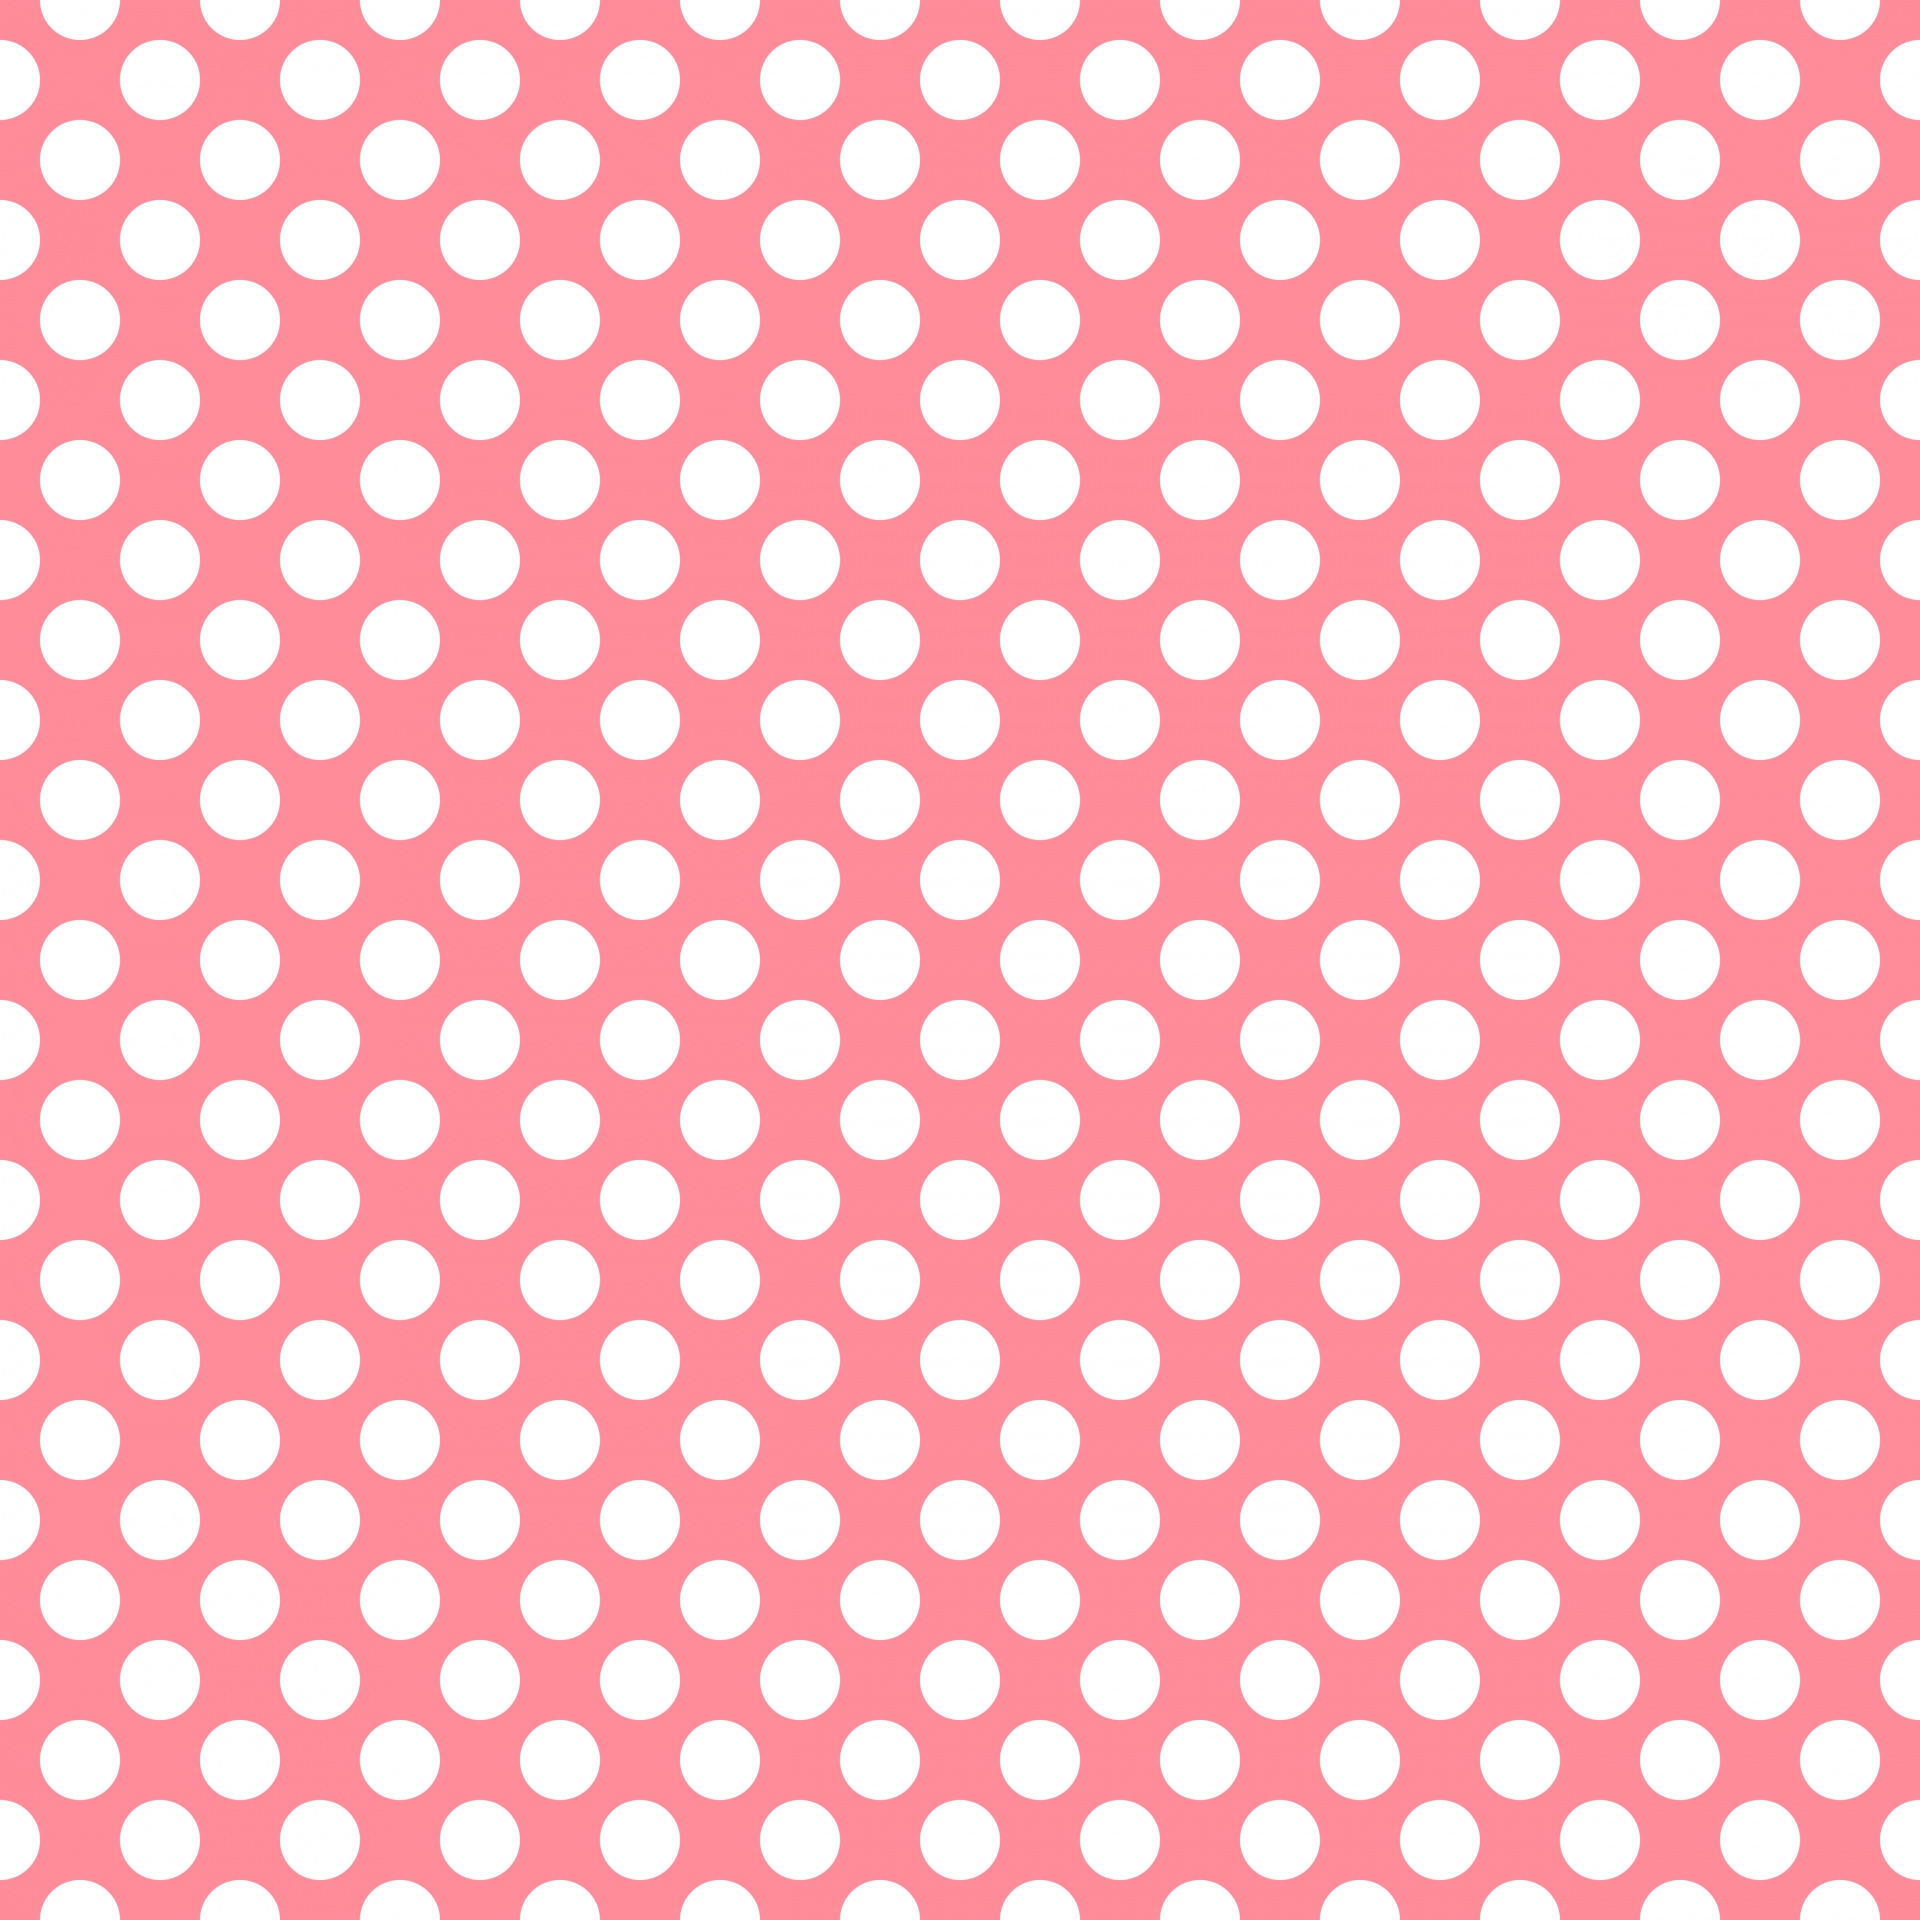 Polka Dots Coral Pink